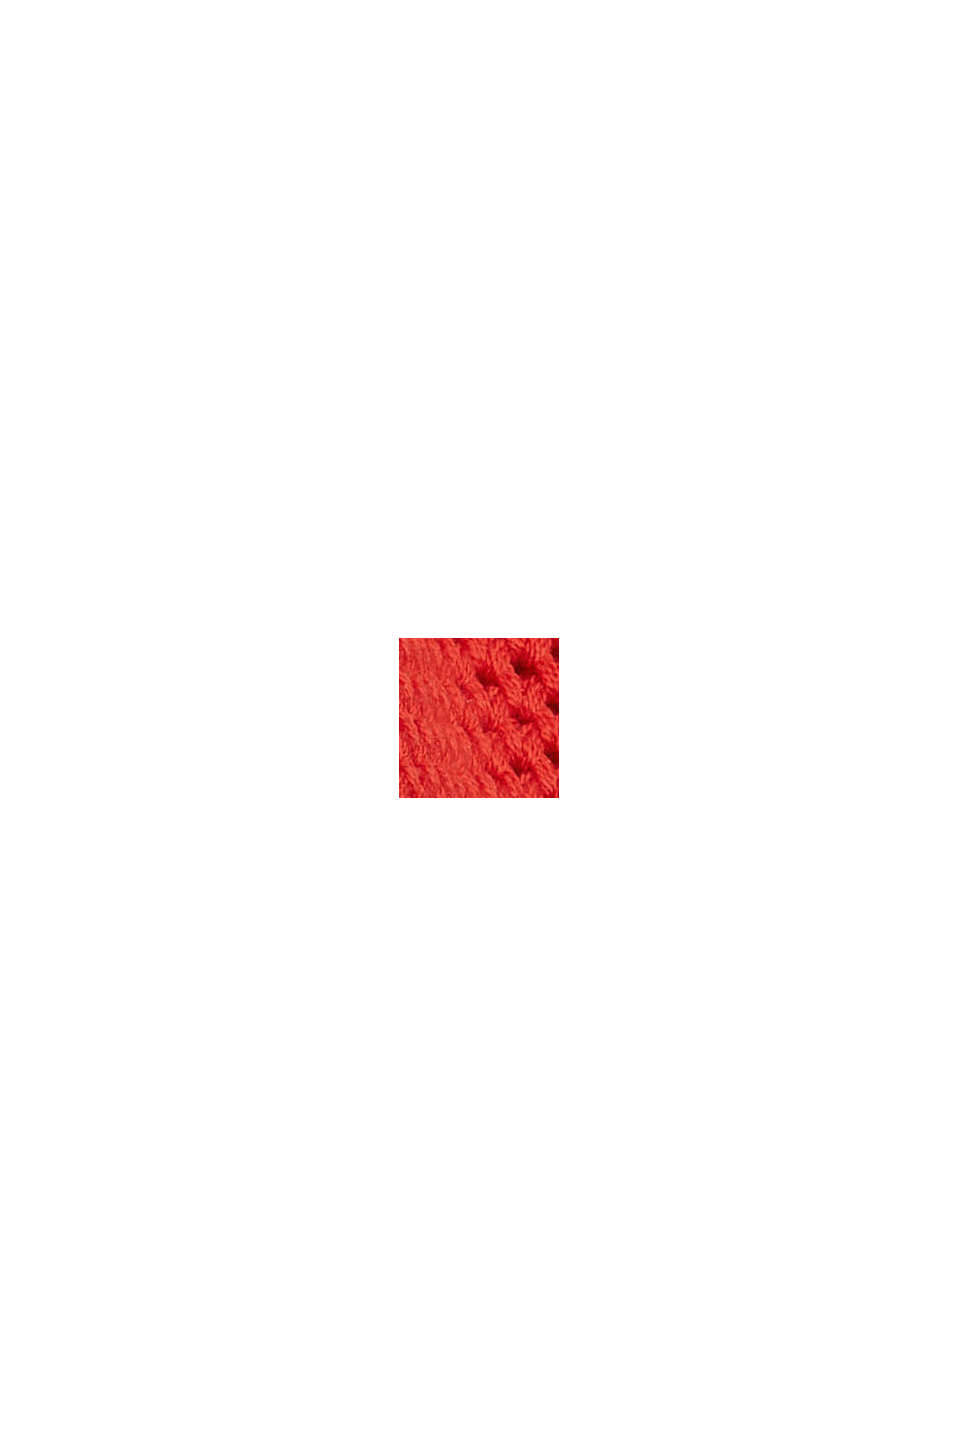 Pullover aus Strukturstrick, Baumwoll-Mix, ORANGE RED, swatch